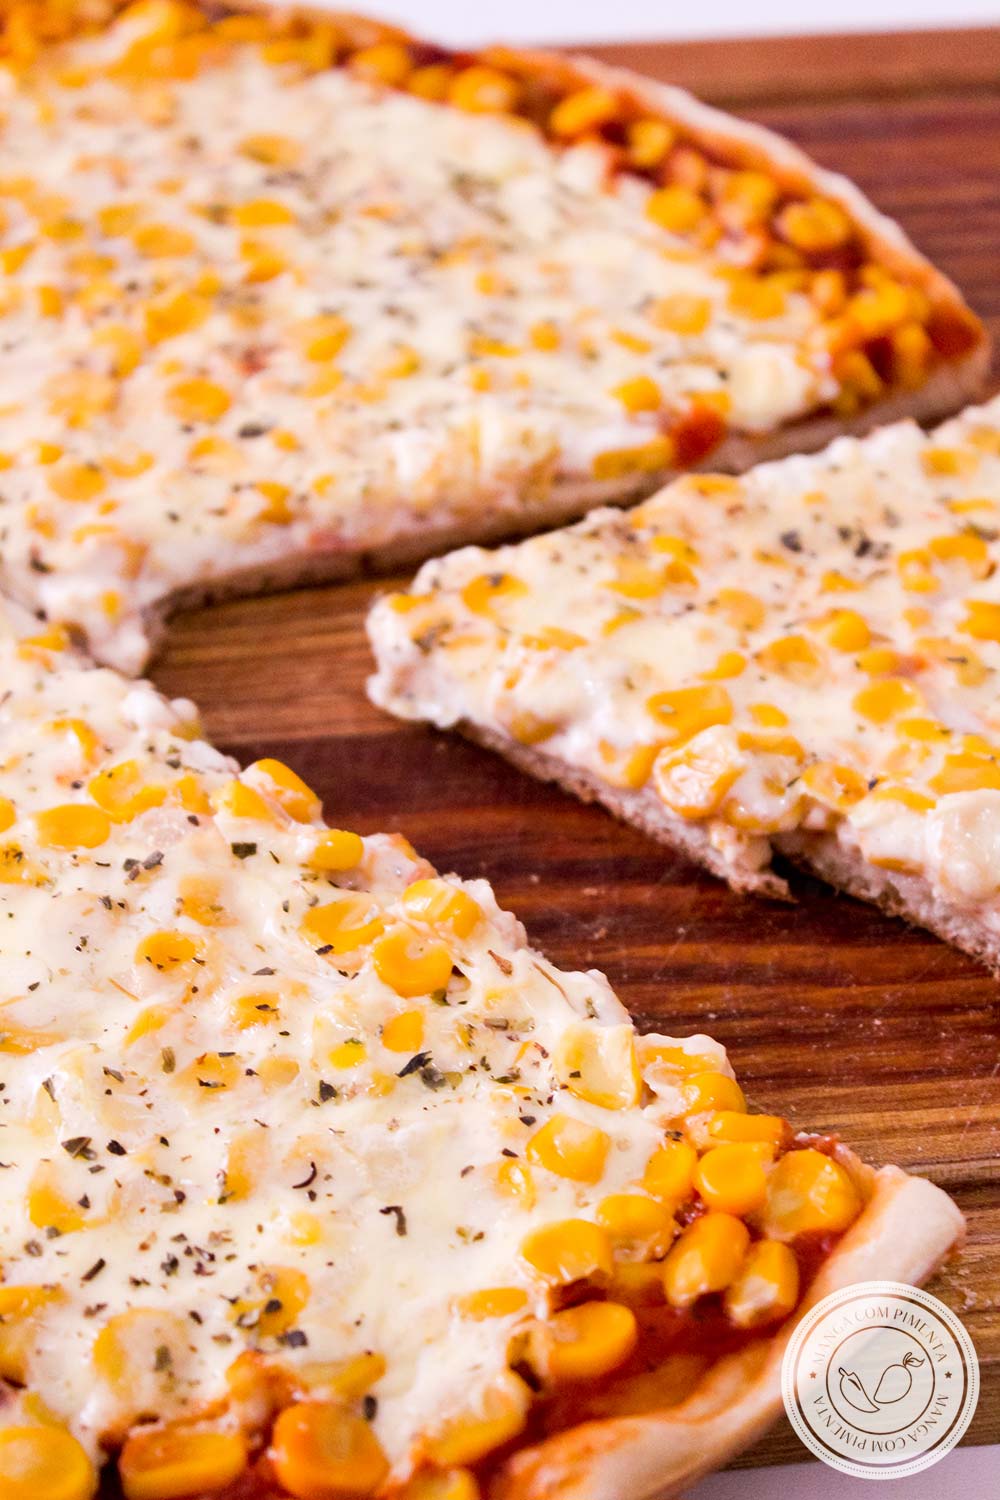 Pizza de Milho Verde e Requeijão - um delicioso lanche caseiro para o final de semana em família!